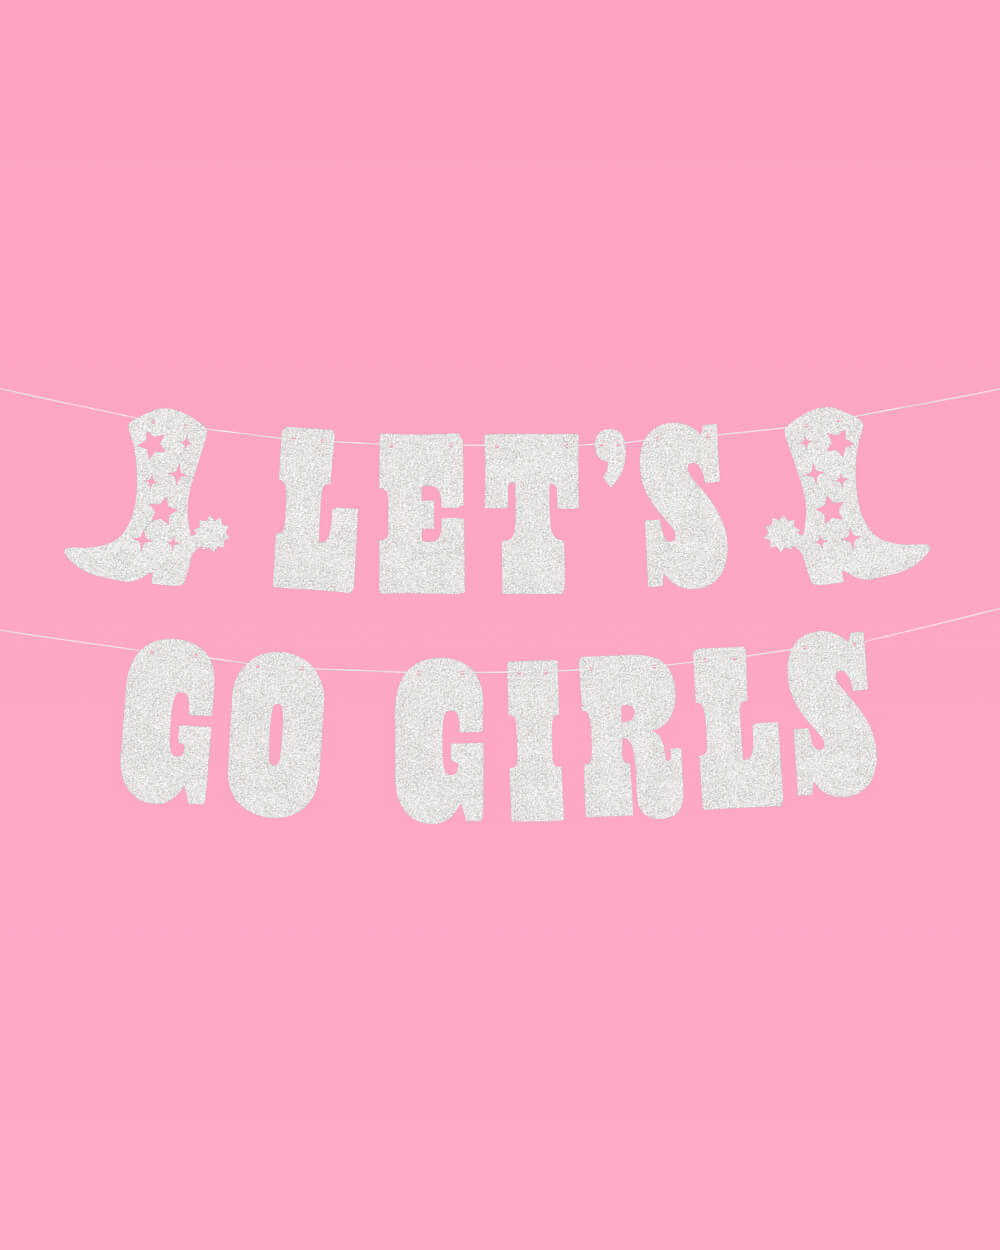 Let's Go Girls Banner - silver glitter banner